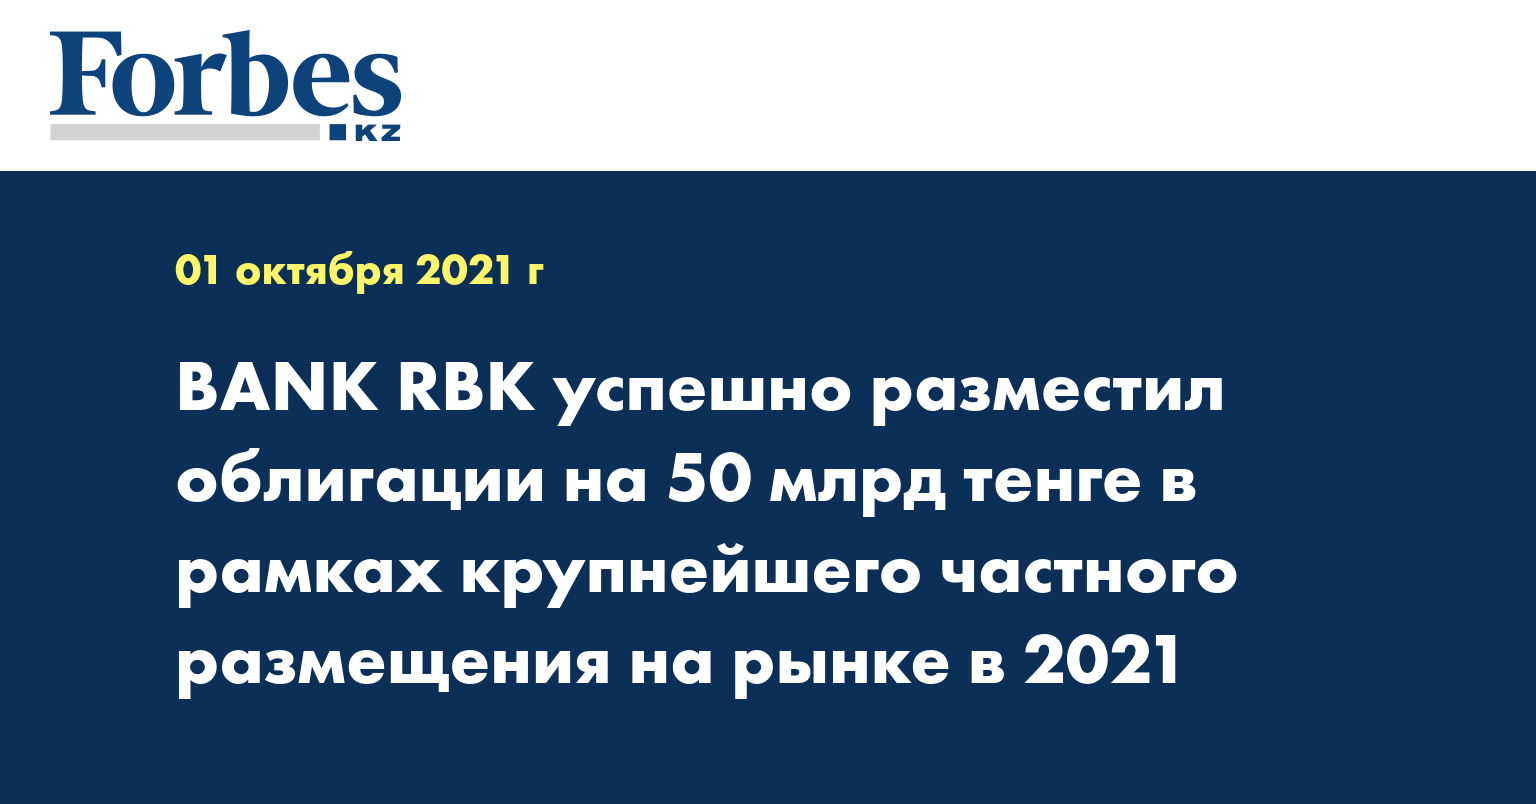 BANK RBK успешно разместил облигации на 50 млрд тенге в рамках крупнейшего частного размещения на рынке в 2021